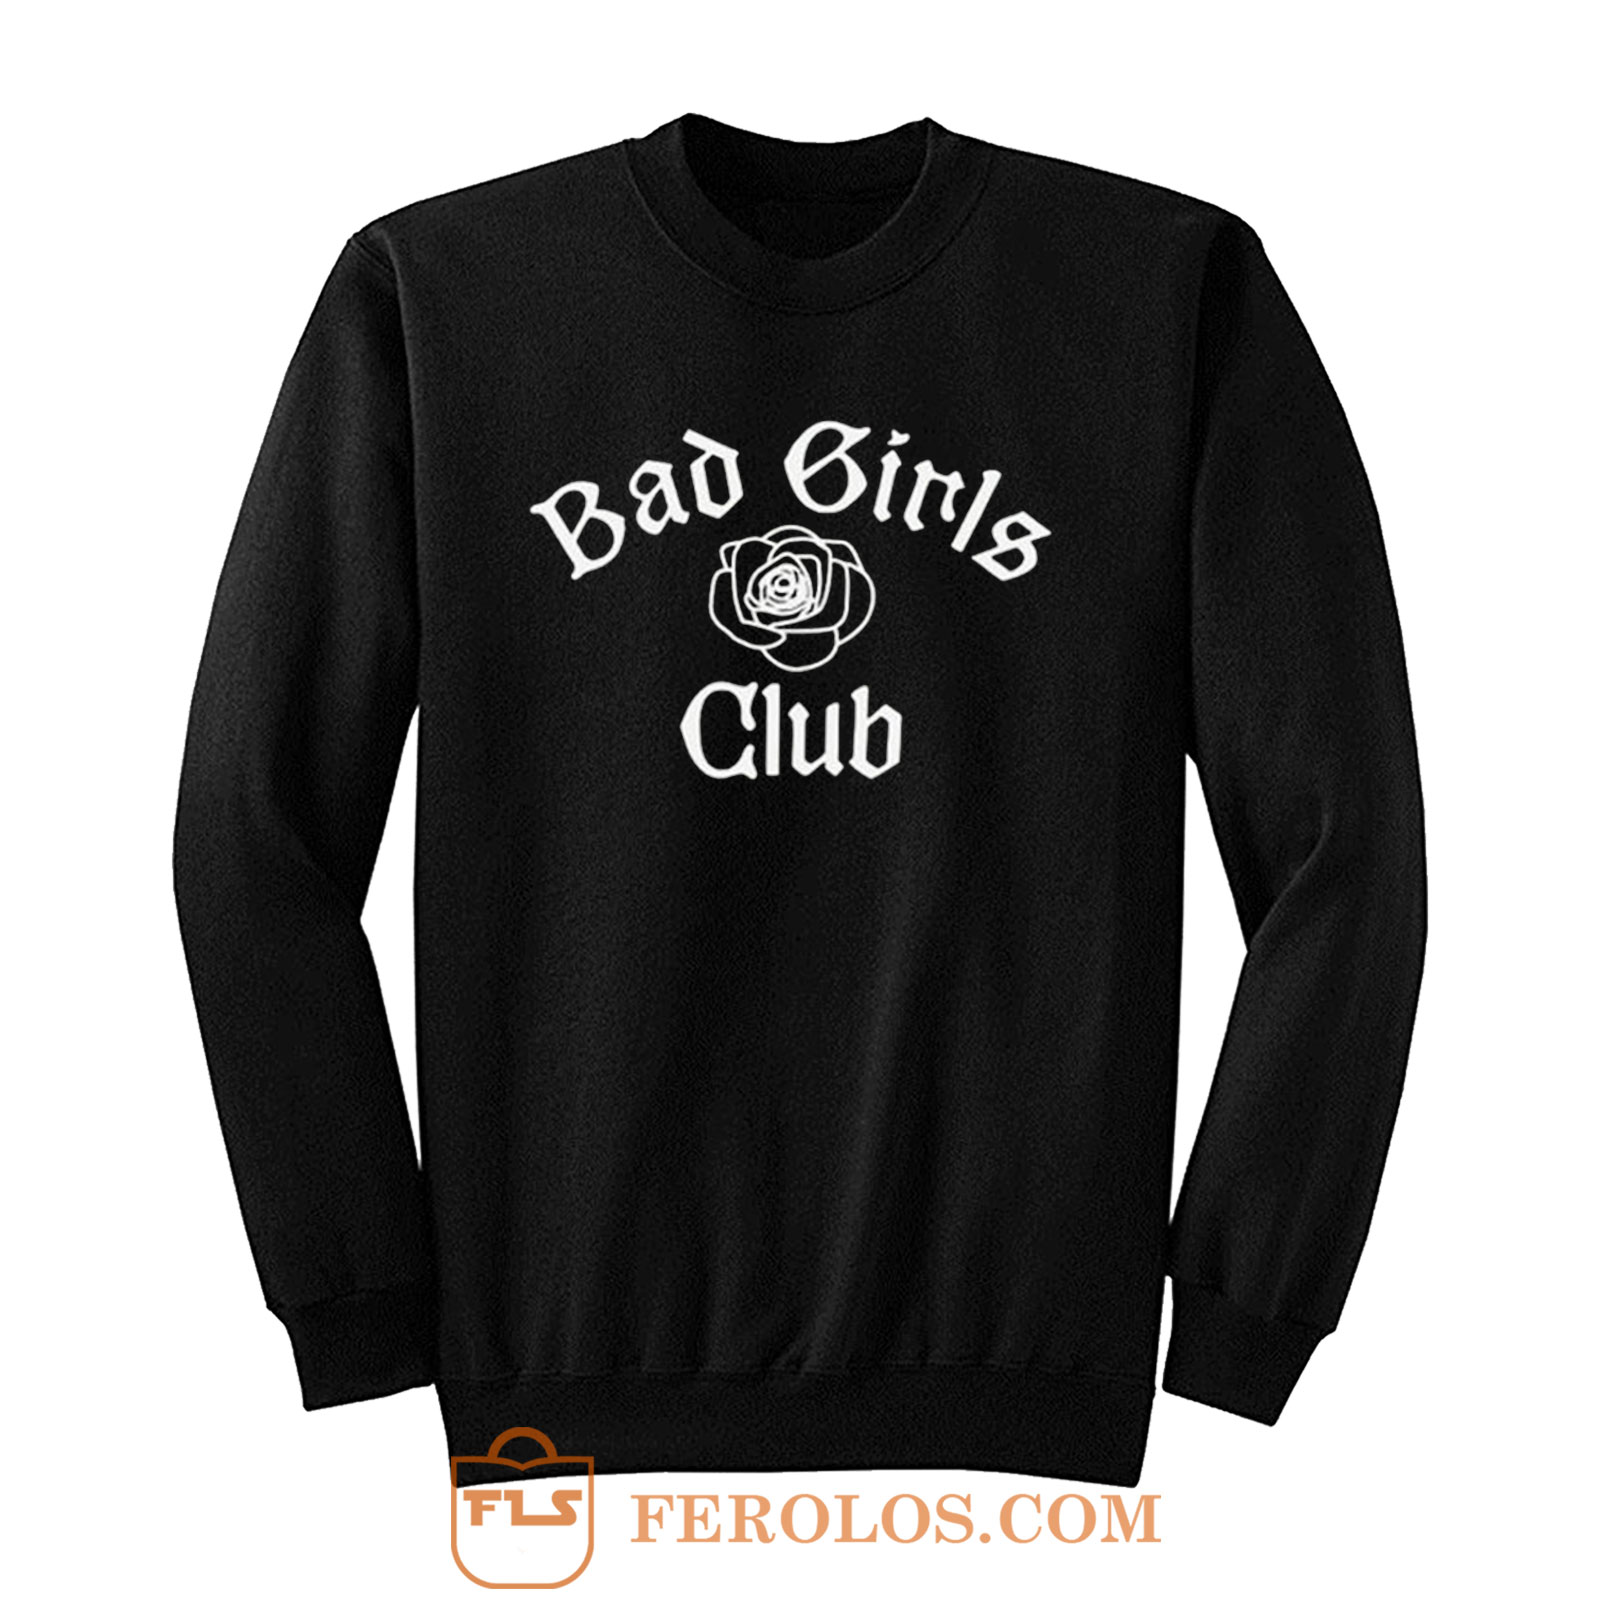 Bad Girls Club Sweatshirt | FEROLOS.COM